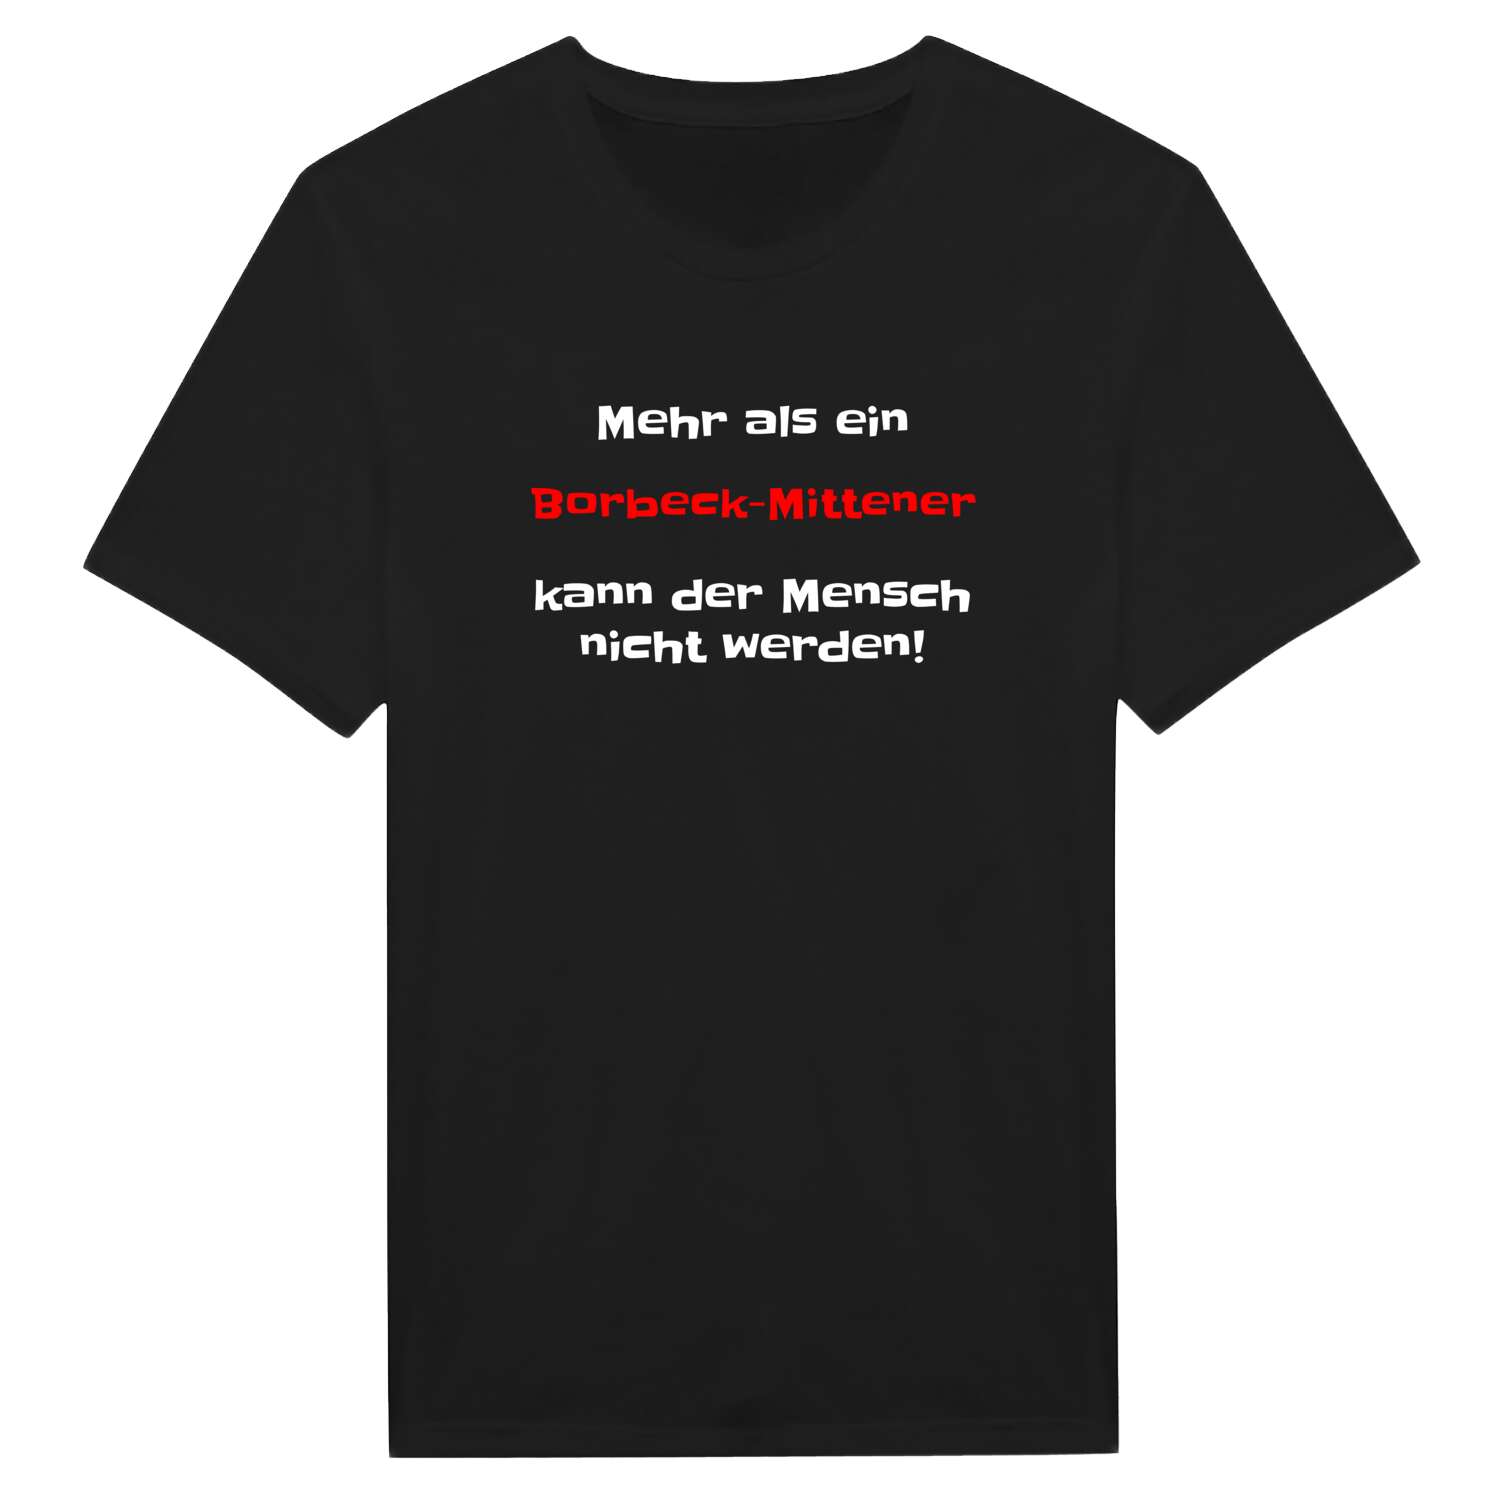 Borbeck-Mitte T-Shirt »Mehr als ein«